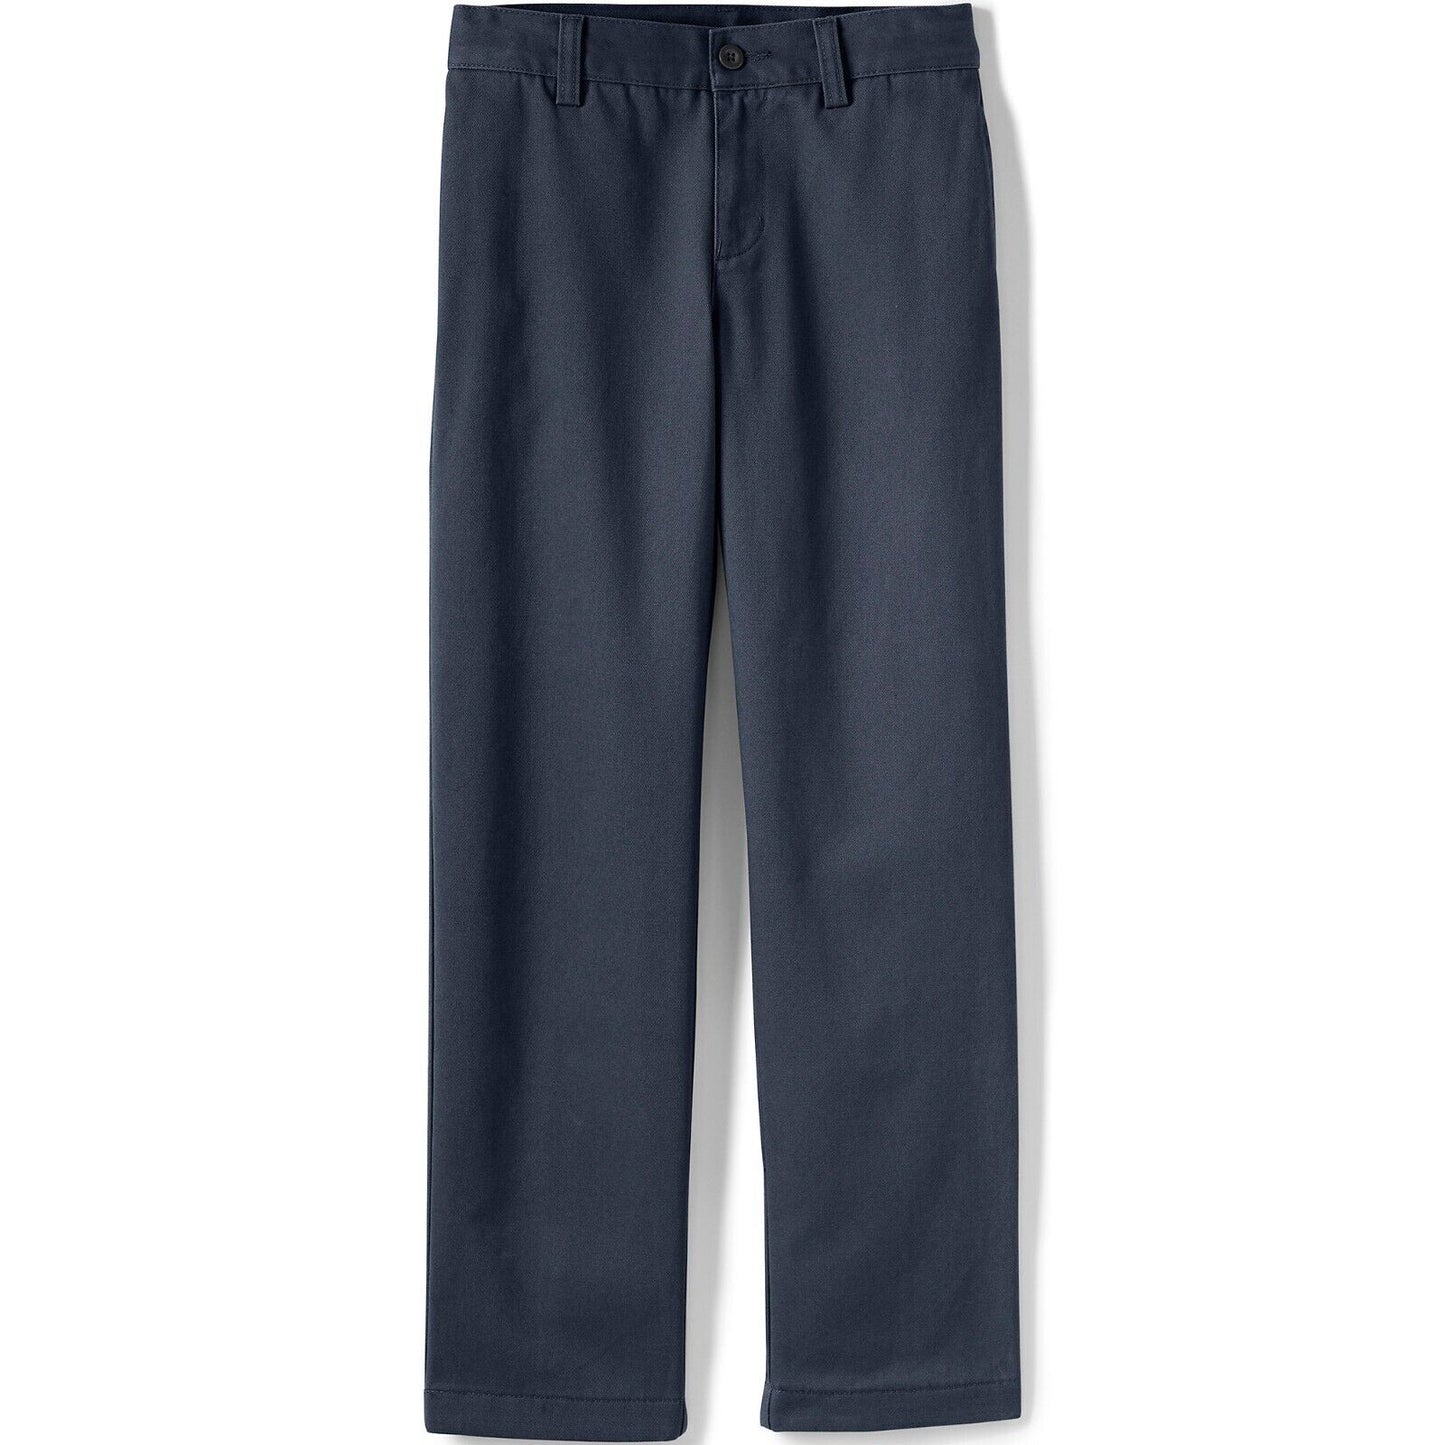 Men's Plain Front Chino Pants Size 38